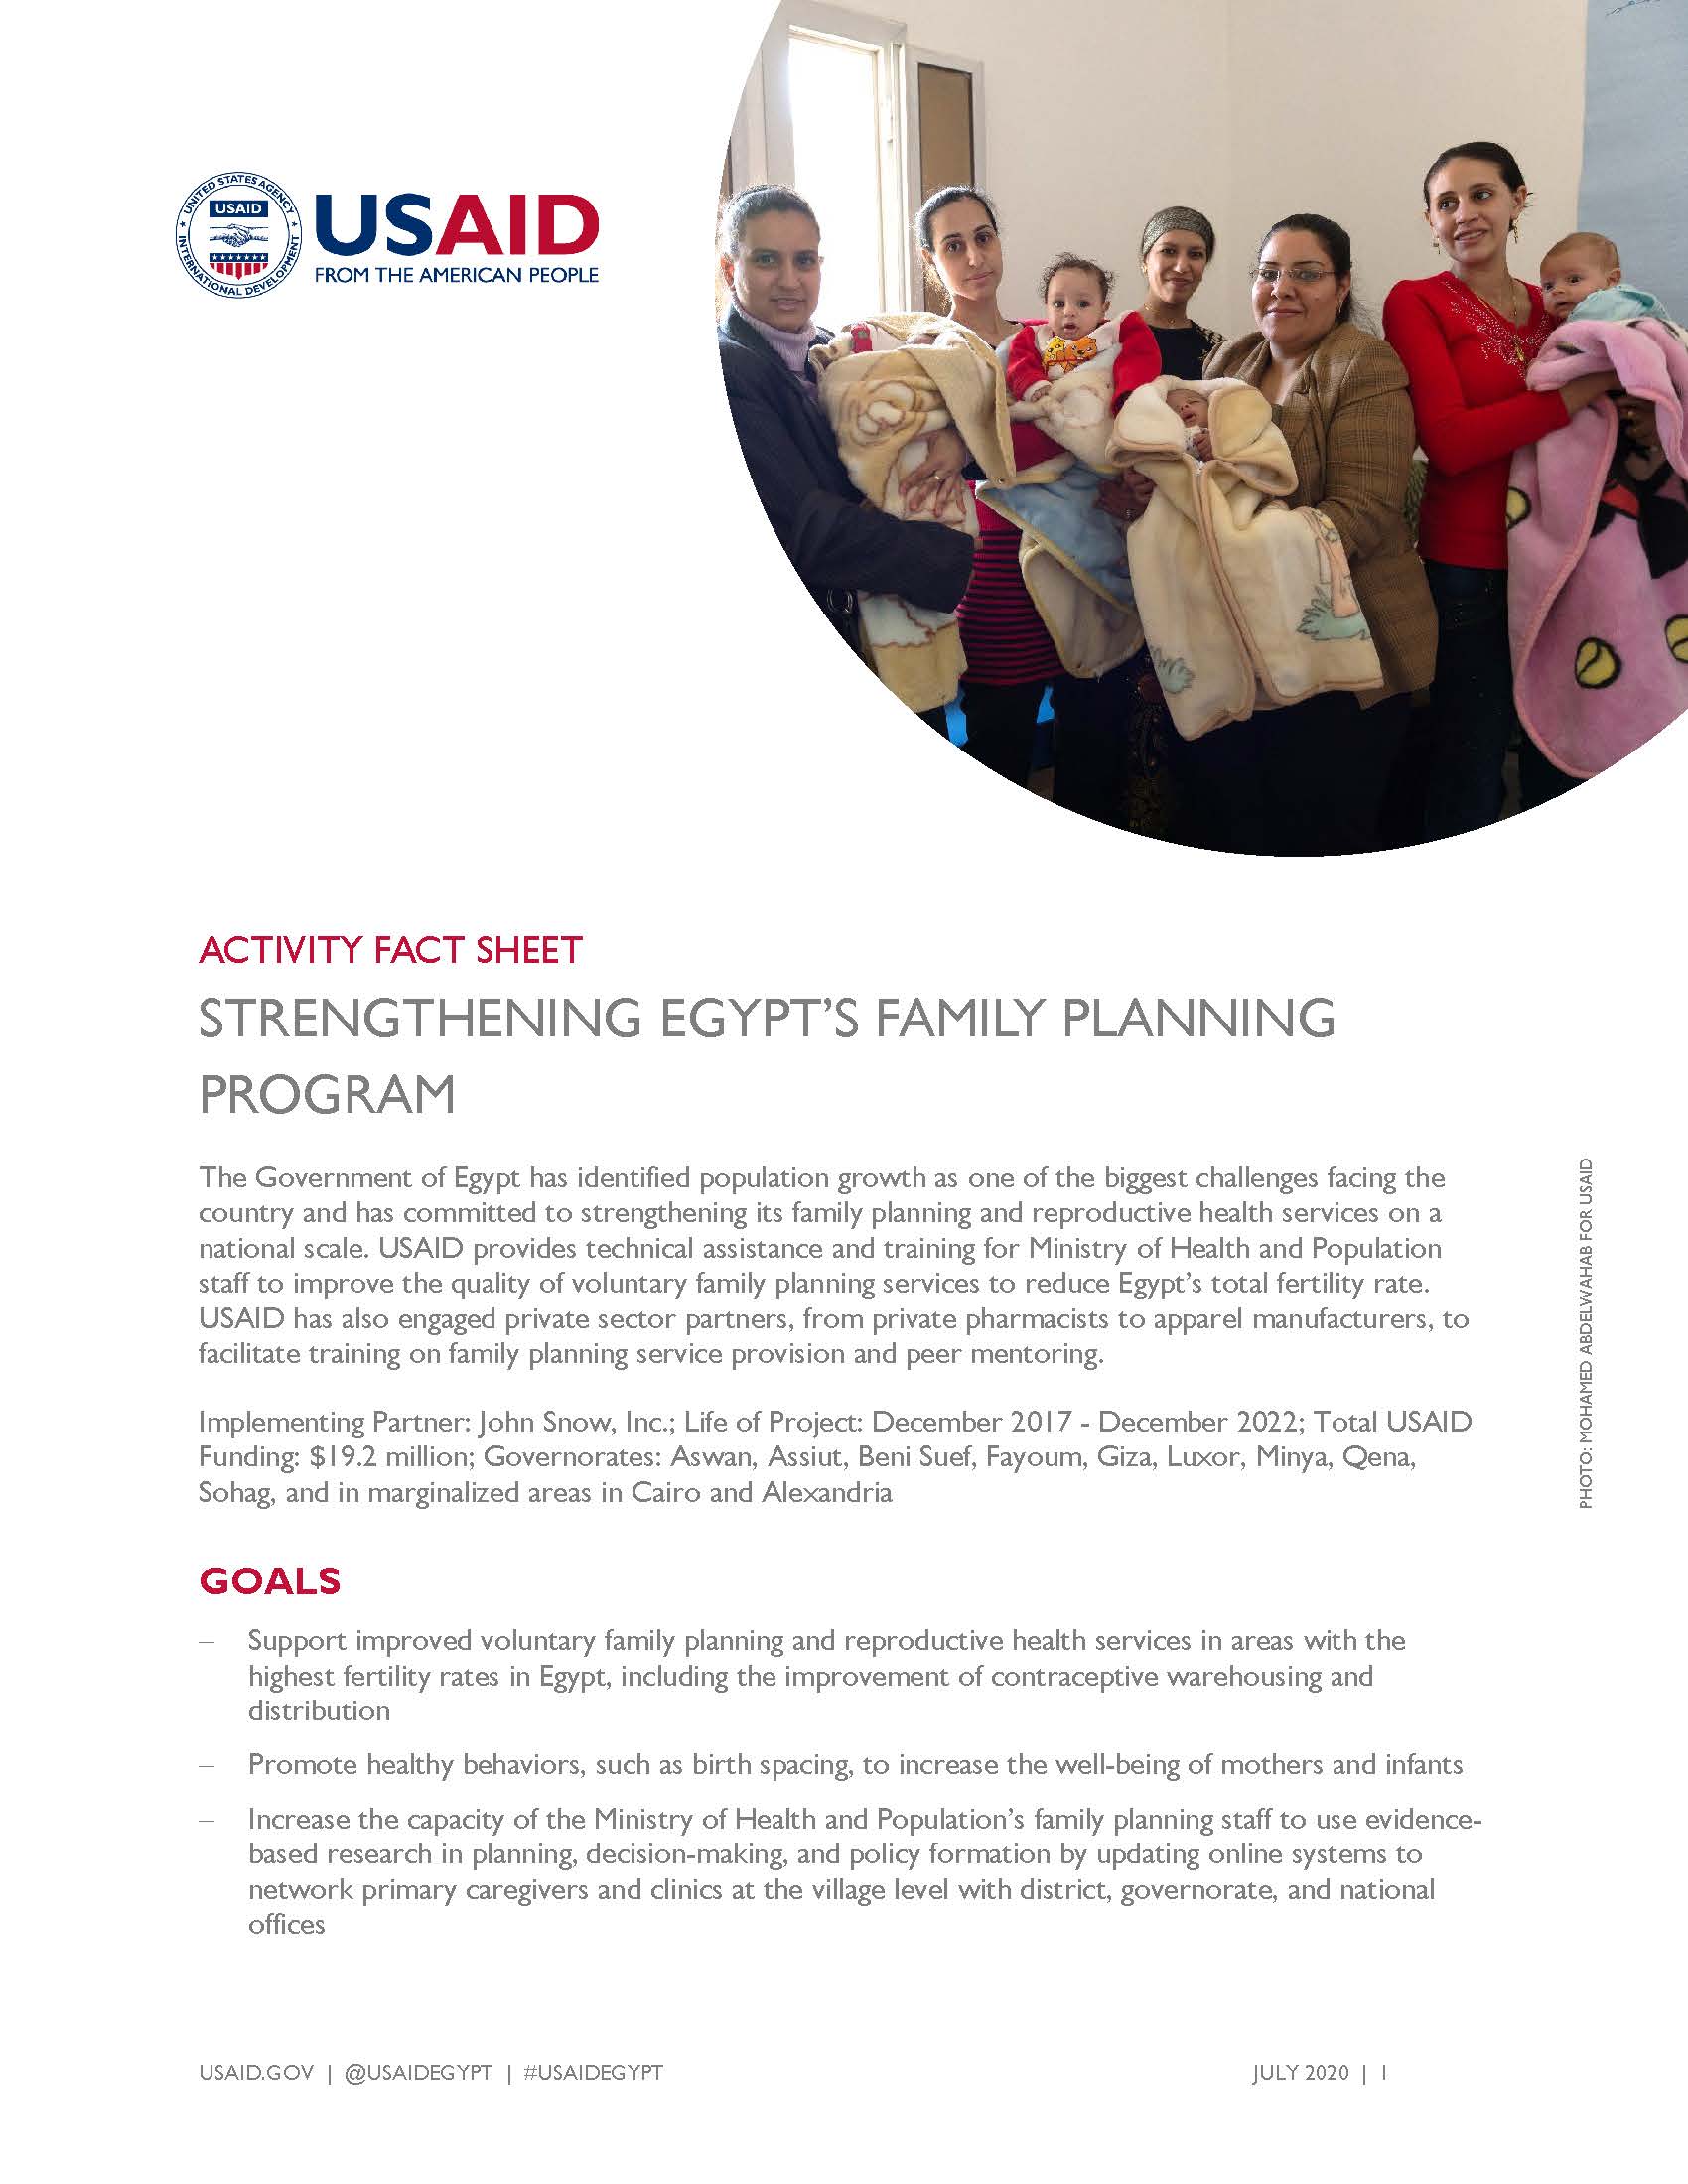 USAID/Egypt Activity Fact Sheet: Strengthening Egypt’s Family Planning Program 